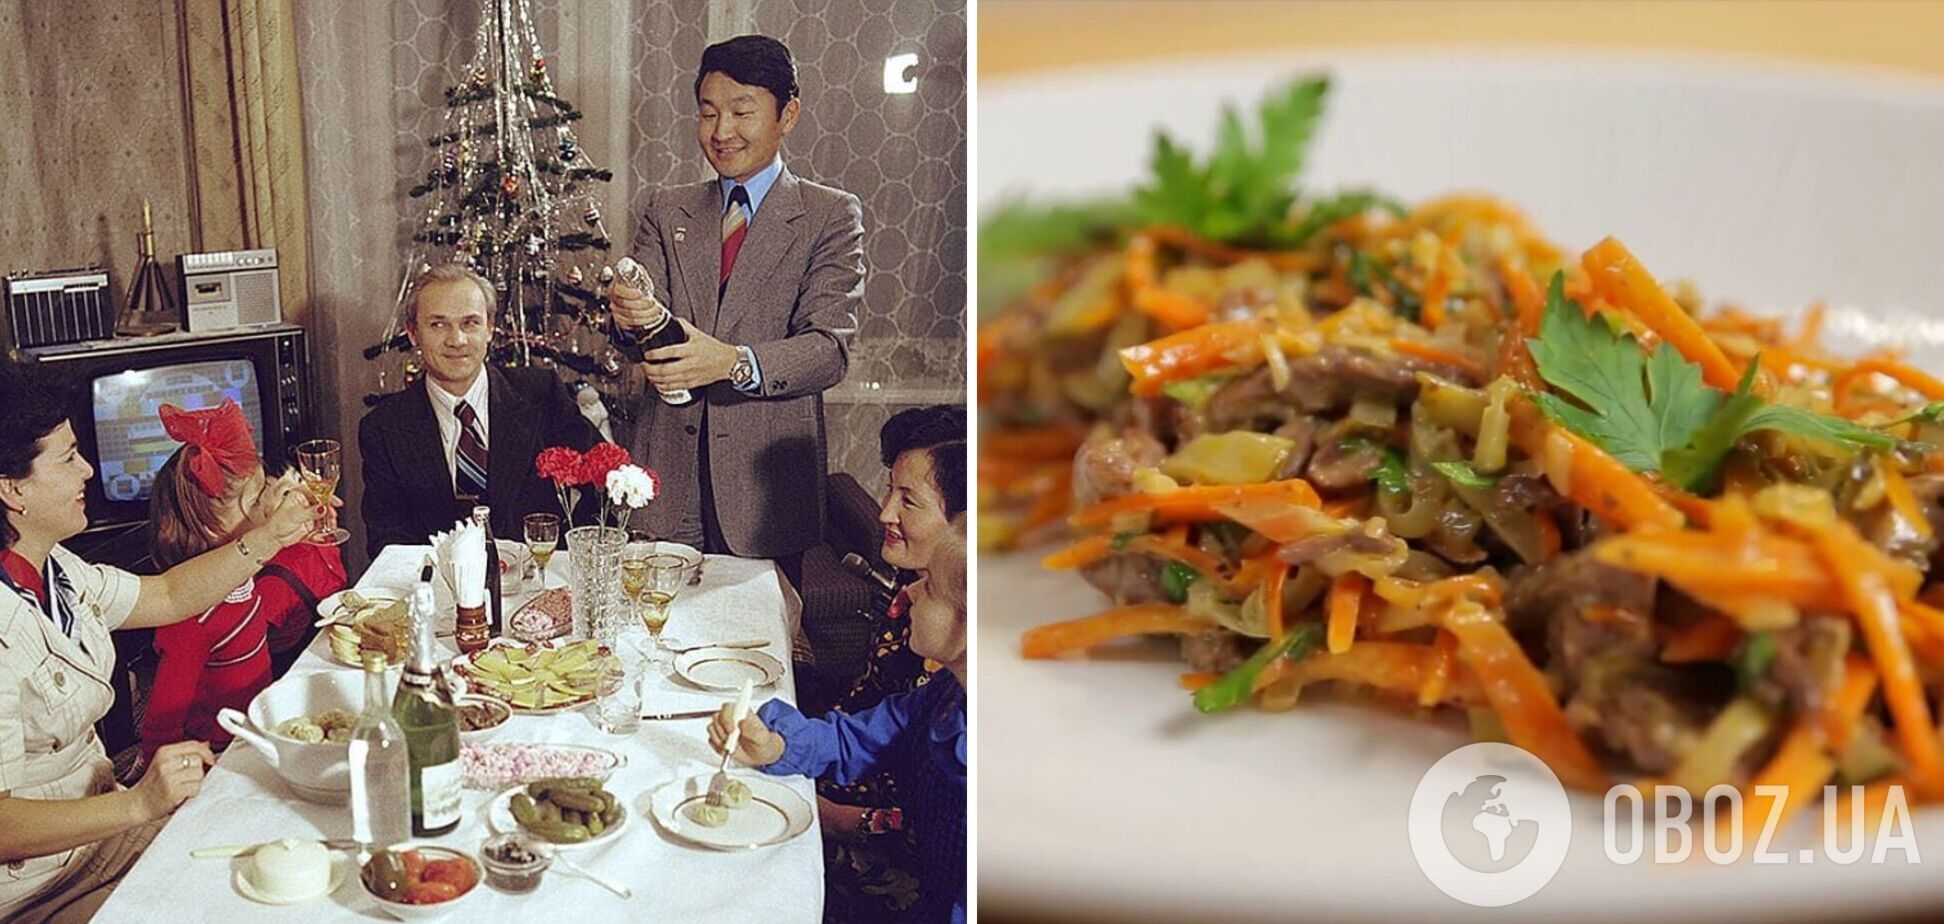 Забытый новогодний салат из СССР 'Обжора': как повторить знаменитое блюдо